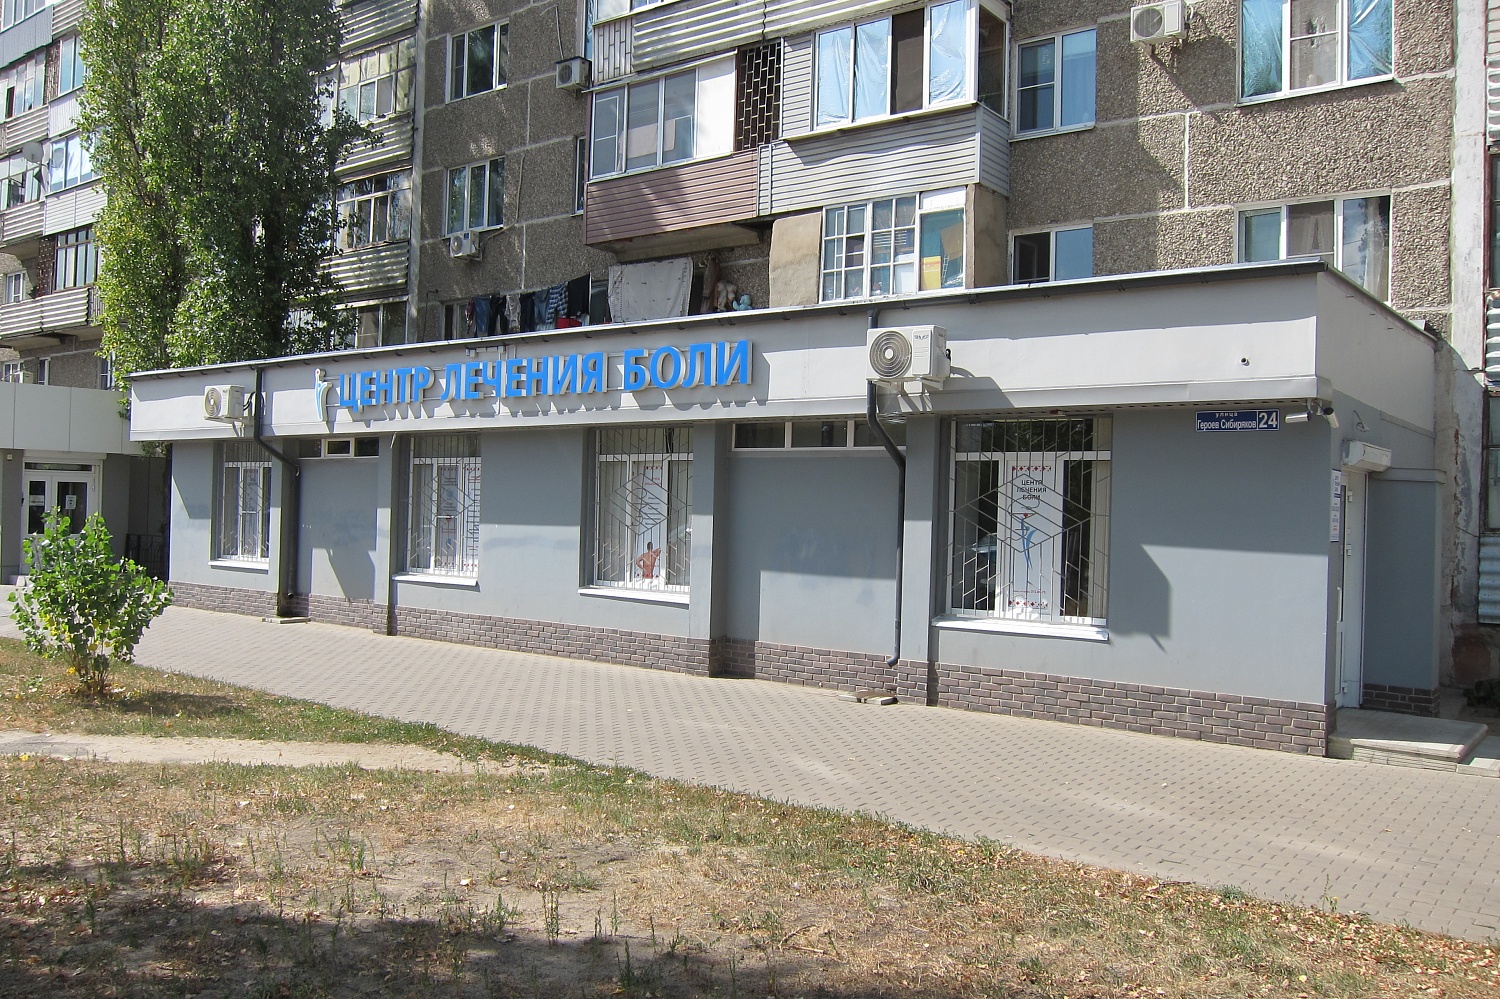 Открылся новый филиал клиники по адресу ул. Героев Сибиряков, 24 (ост. "Мелодия")